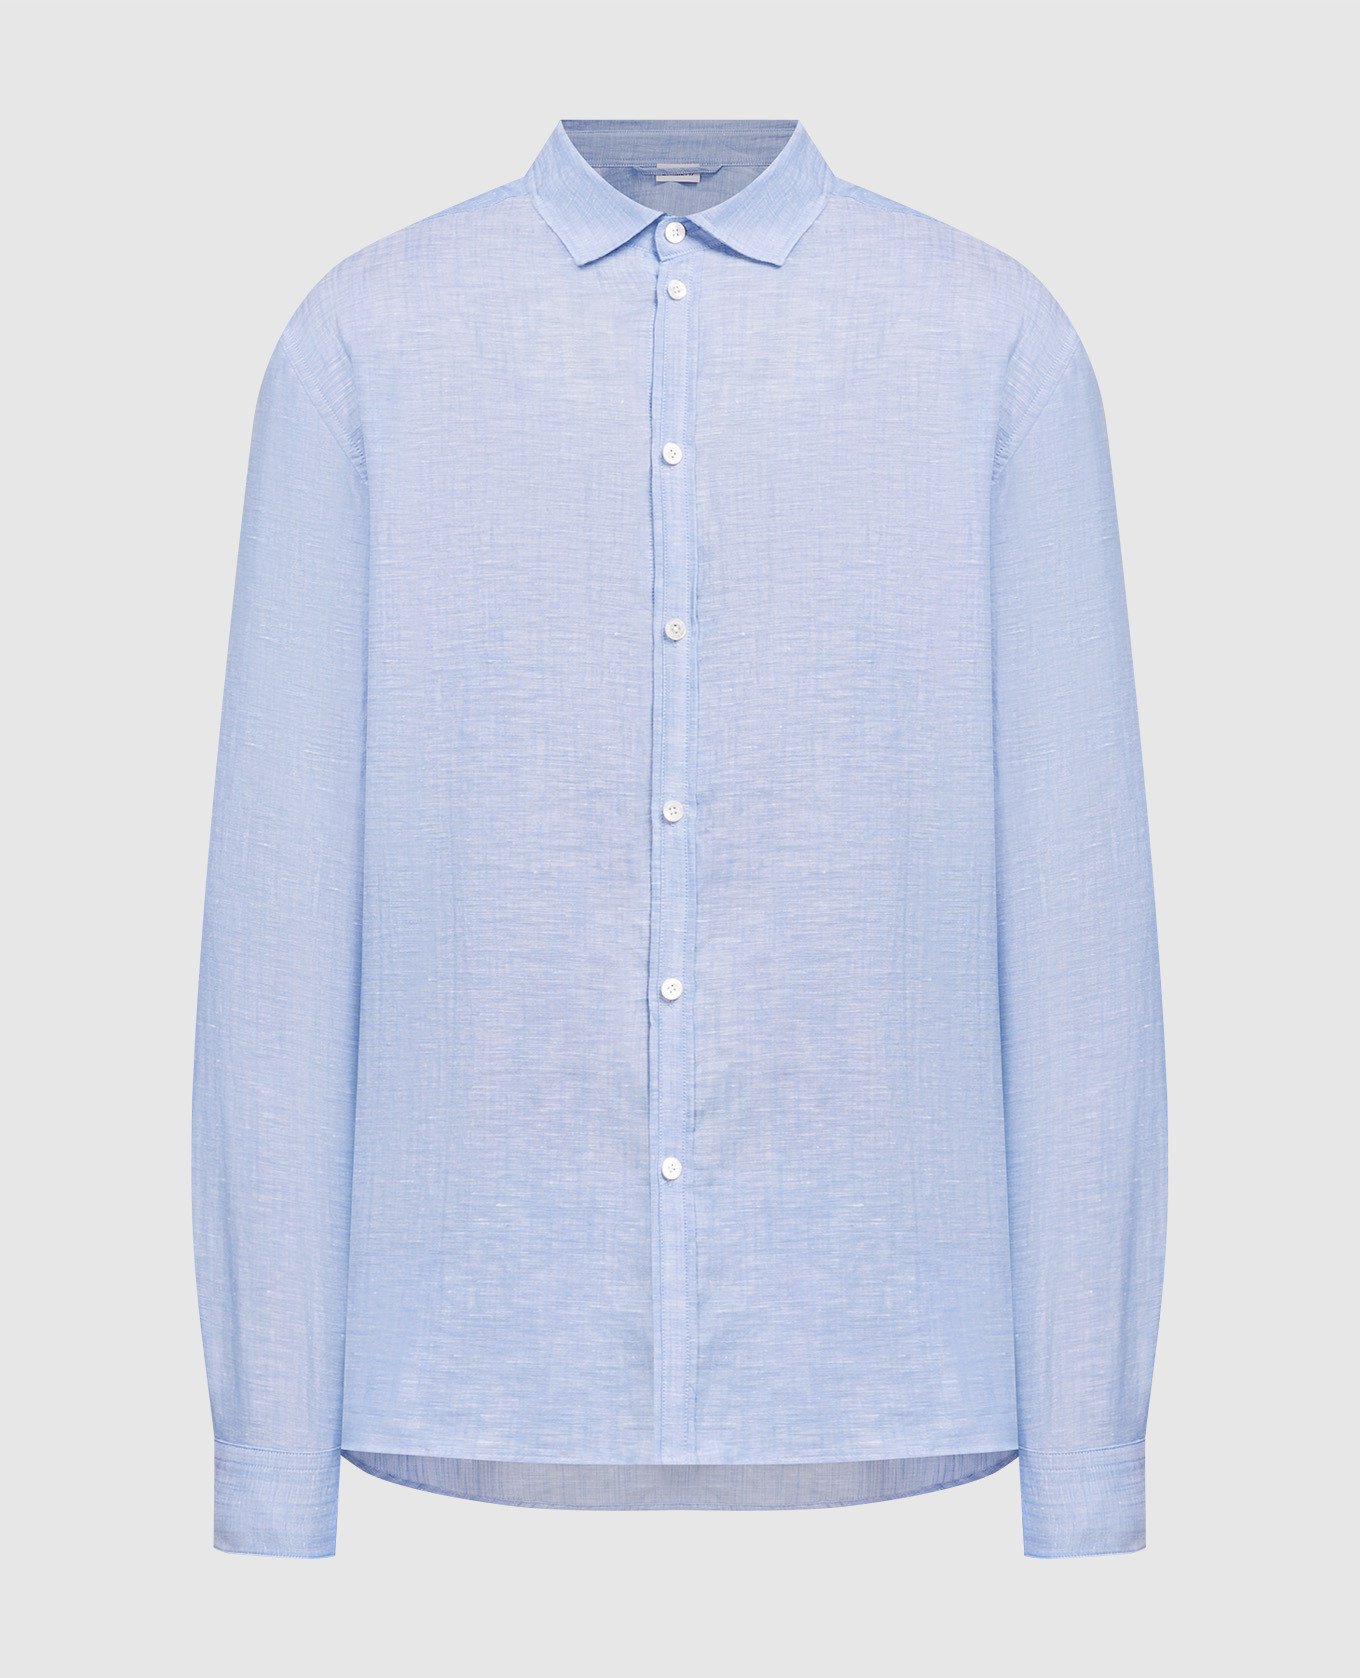 Blue shirt with linen